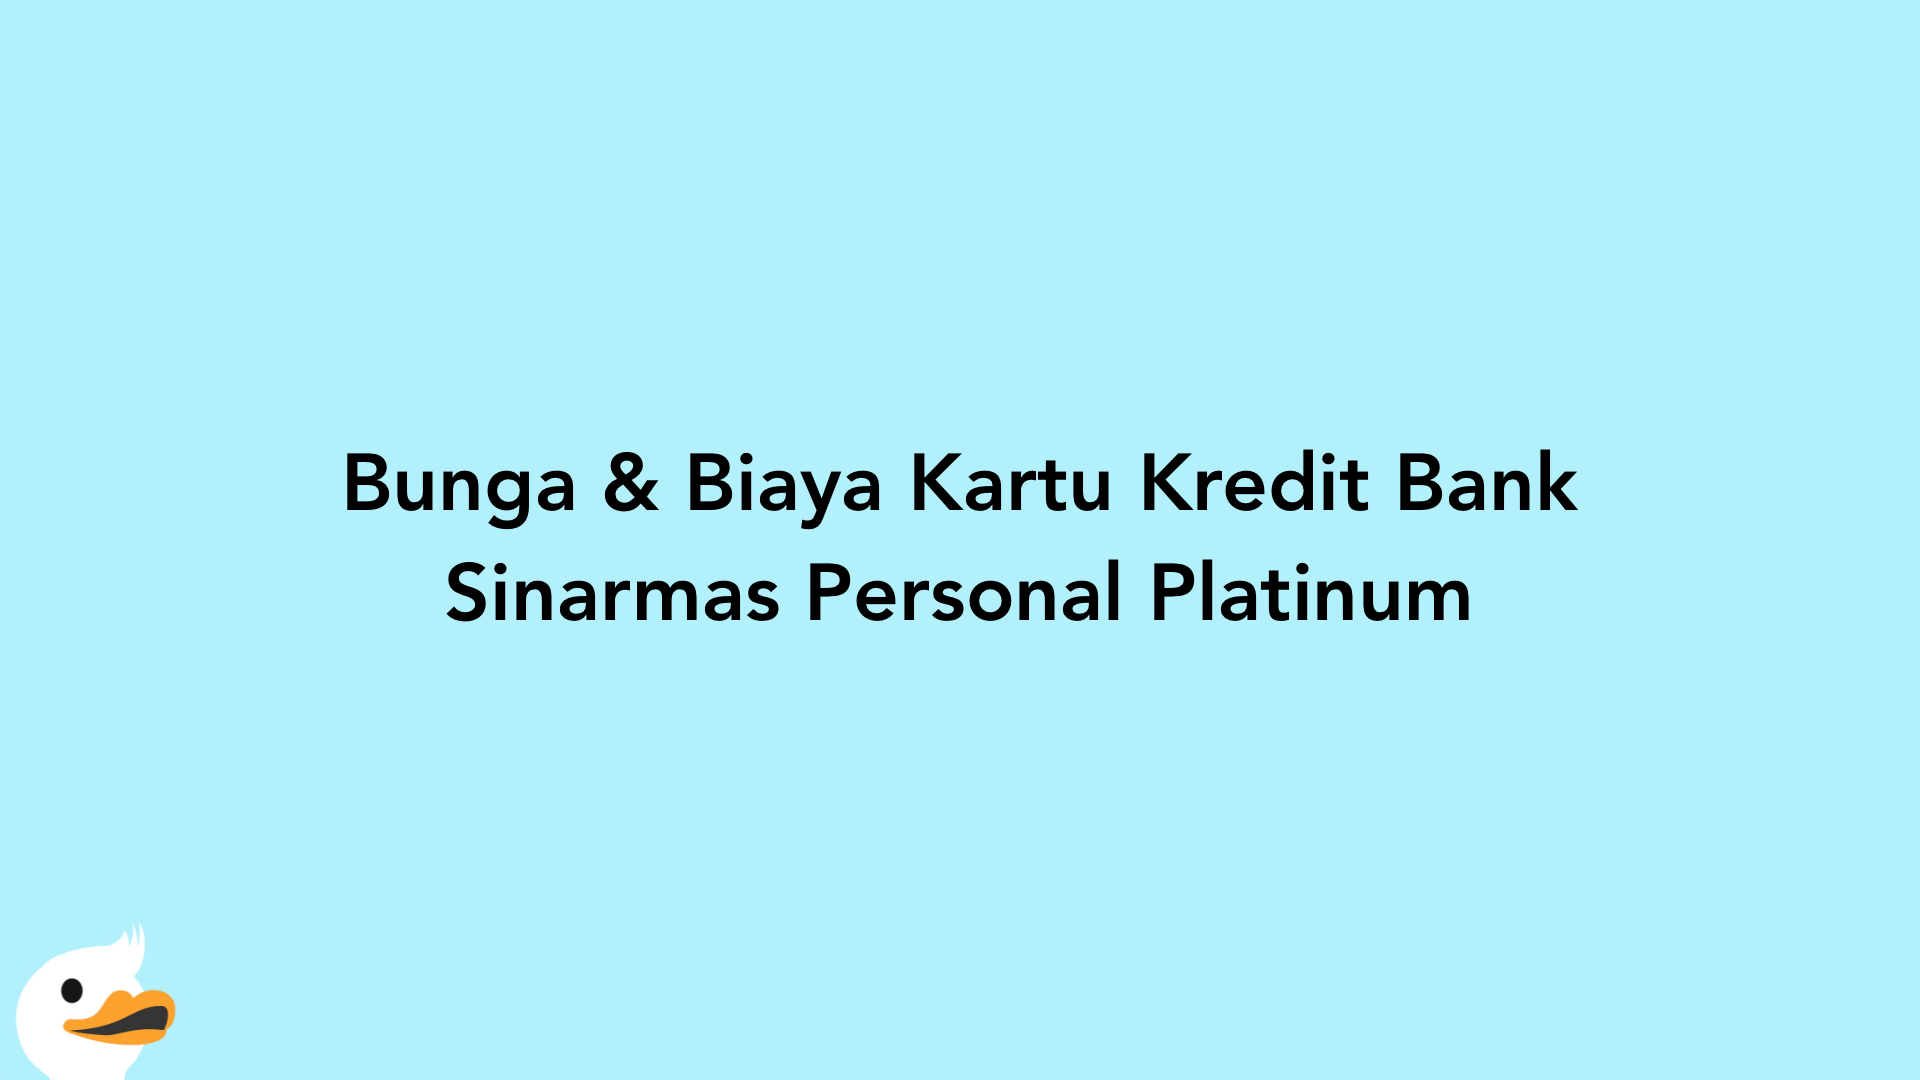 Bunga & Biaya Kartu Kredit Bank Sinarmas Personal Platinum